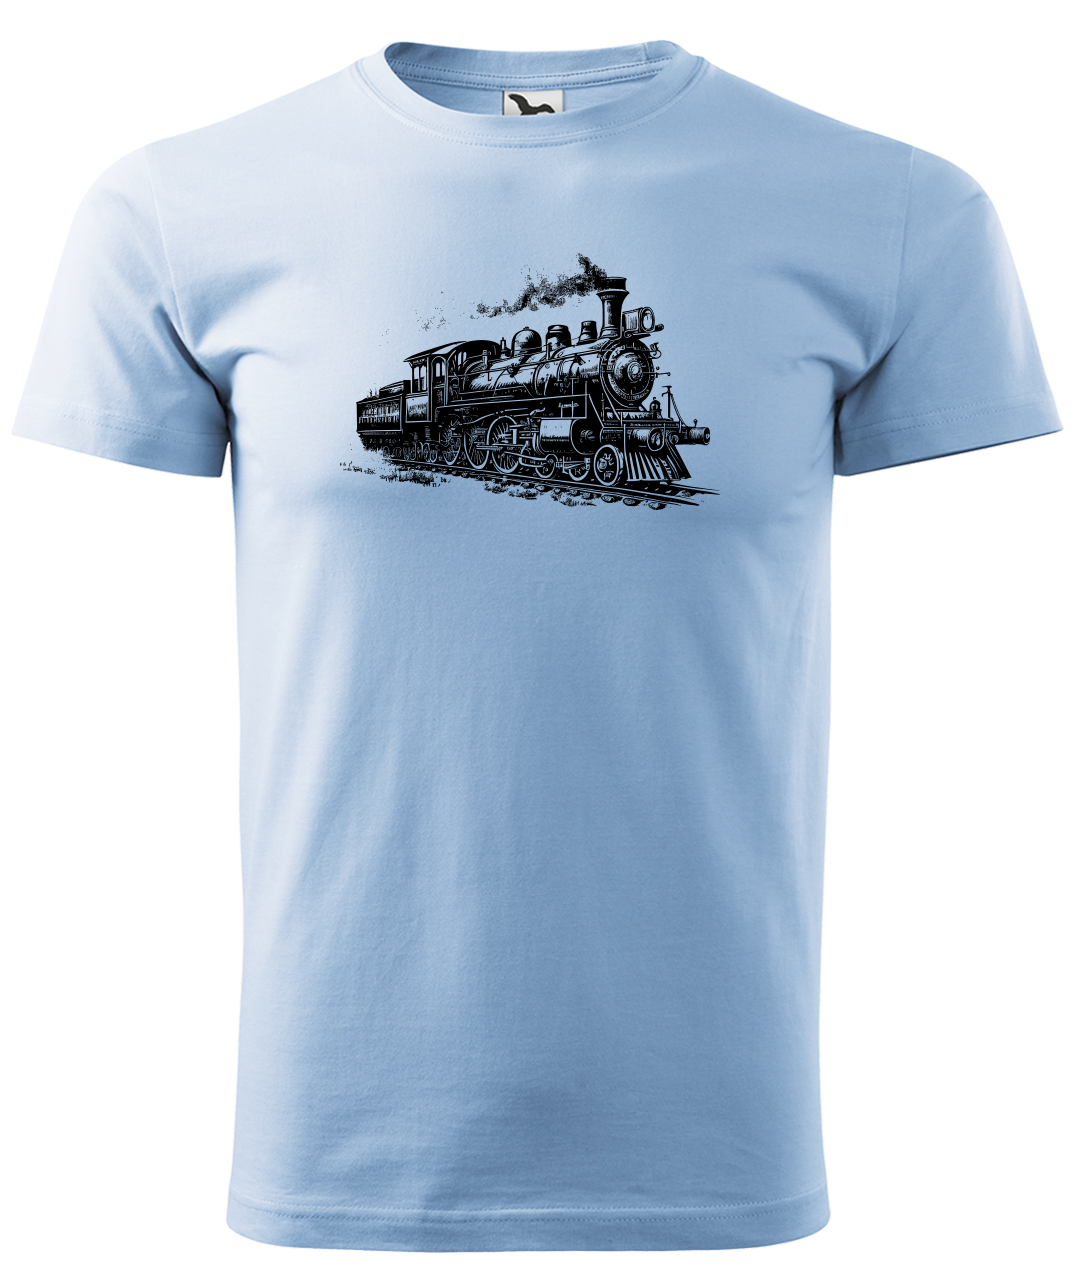 Dětské tričko s vlakem - Stará lokomotiva Velikost: 6 let / 122 cm, Barva: Nebesky modrá (15)